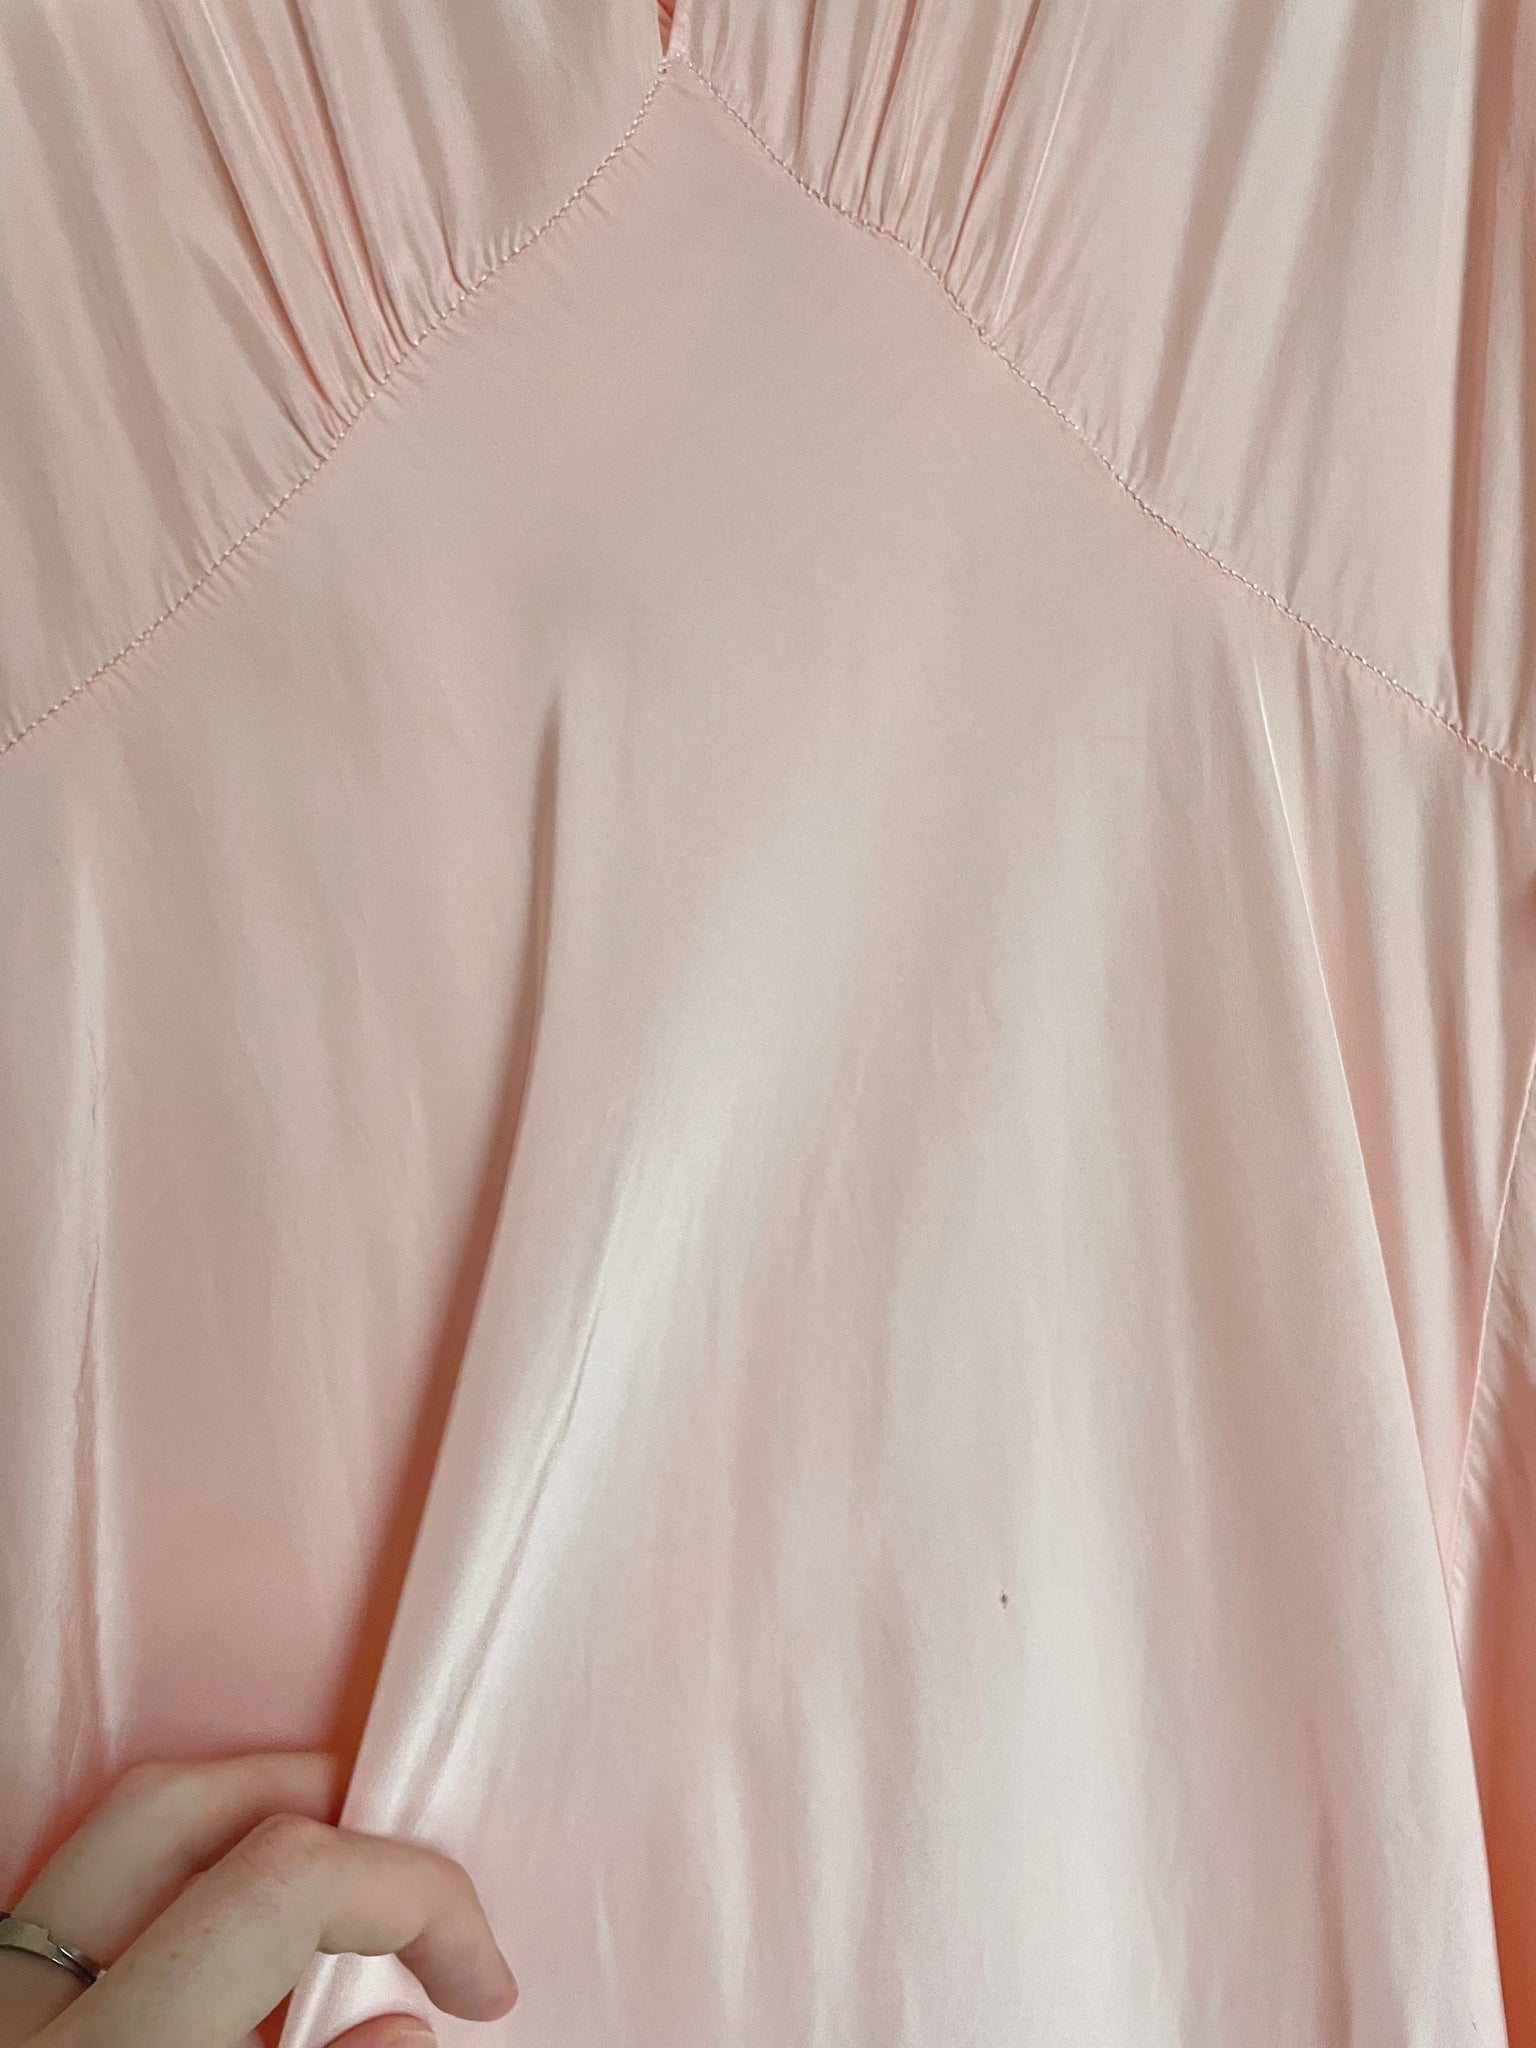 1940s Pink Bow Floral Applique Bias Cut Slip Dress